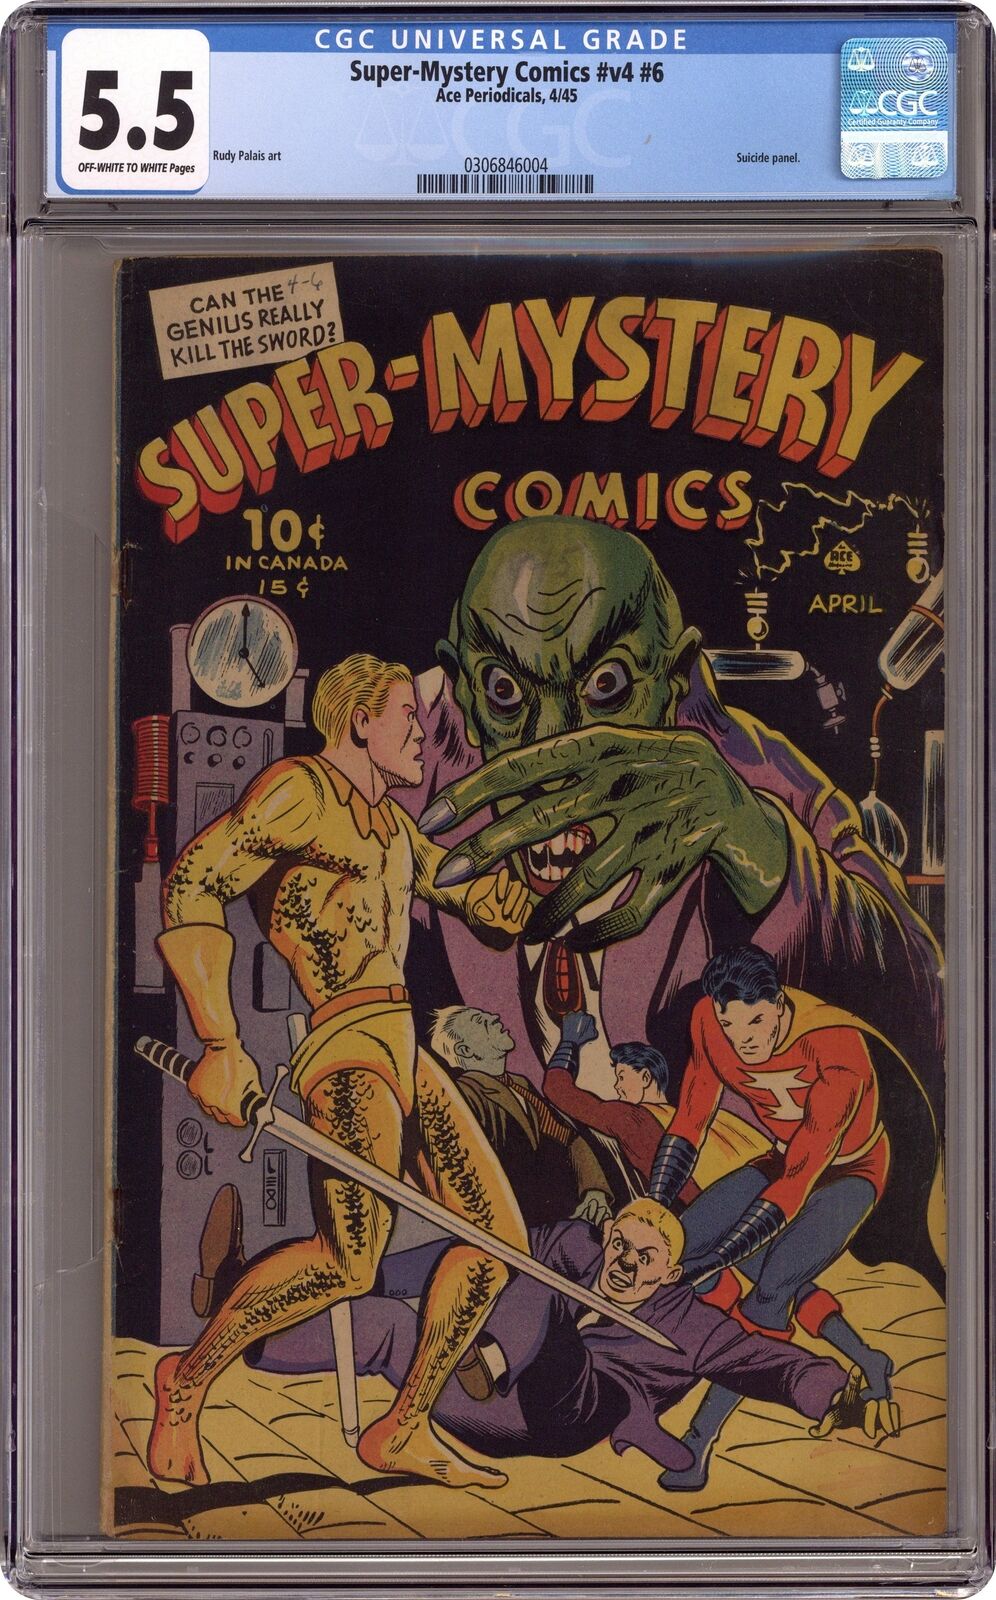 Super Mystery Comics Vol. 4 #6 CGC 5.5 1945 0306846004